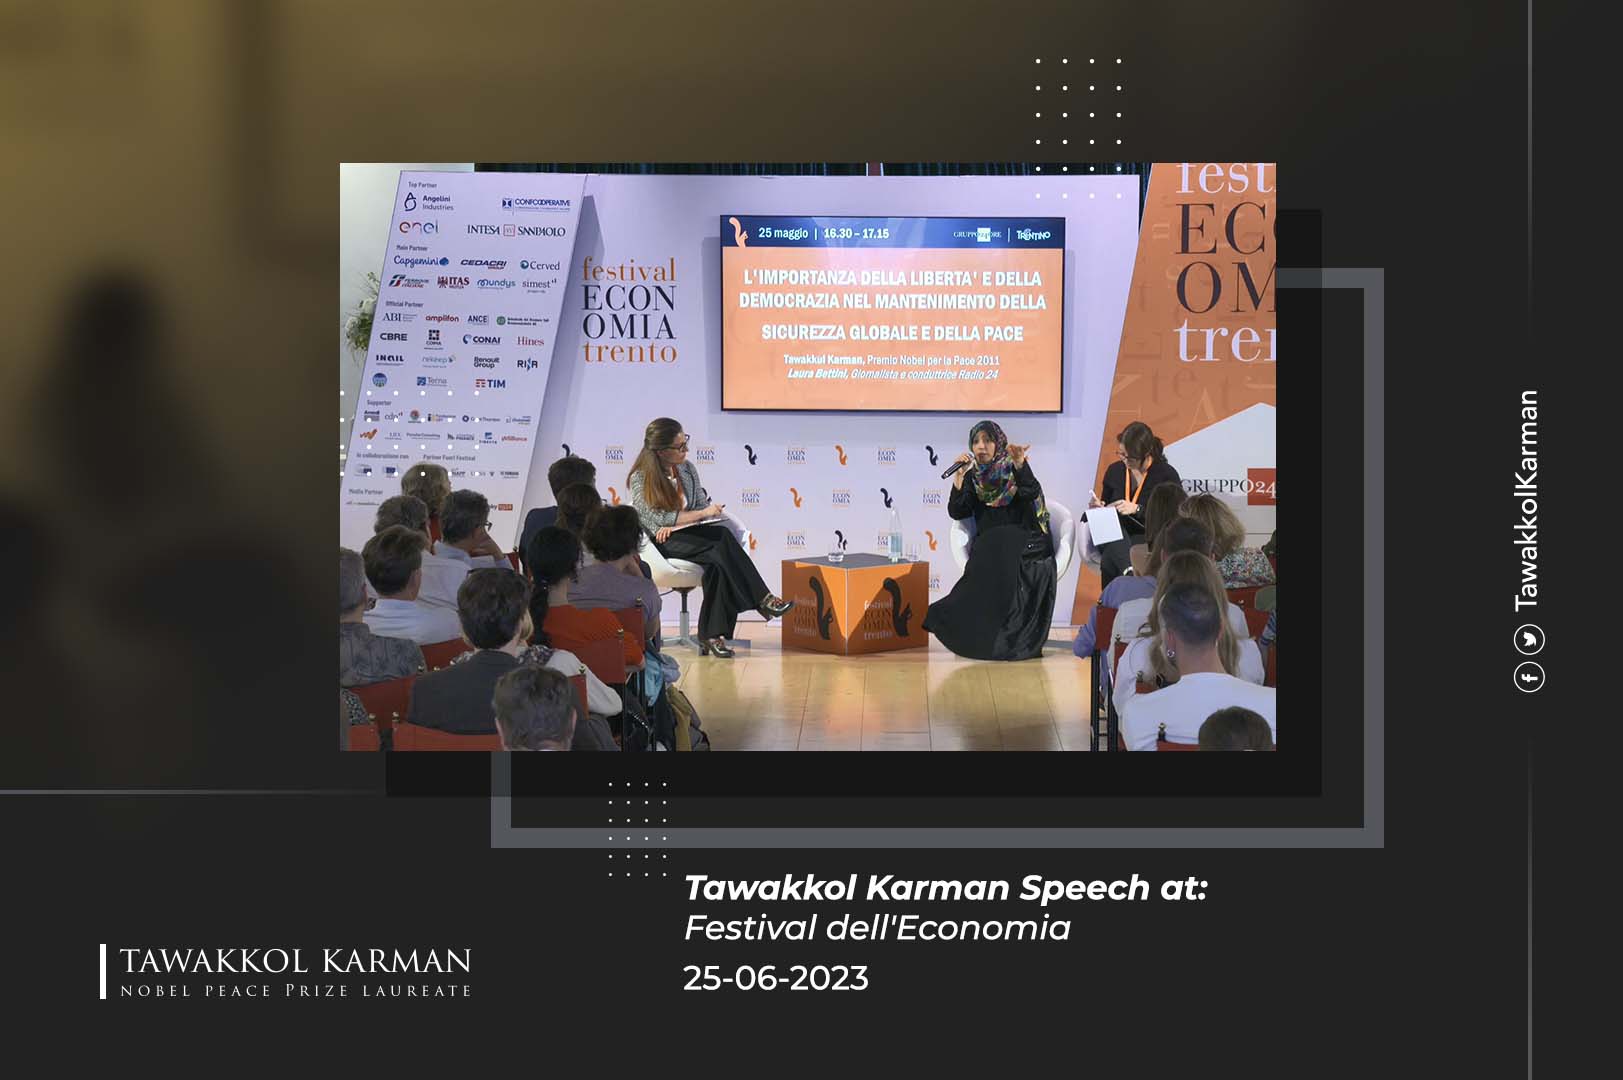 Tawakkol Karman Speech at: Festival dell'Economia